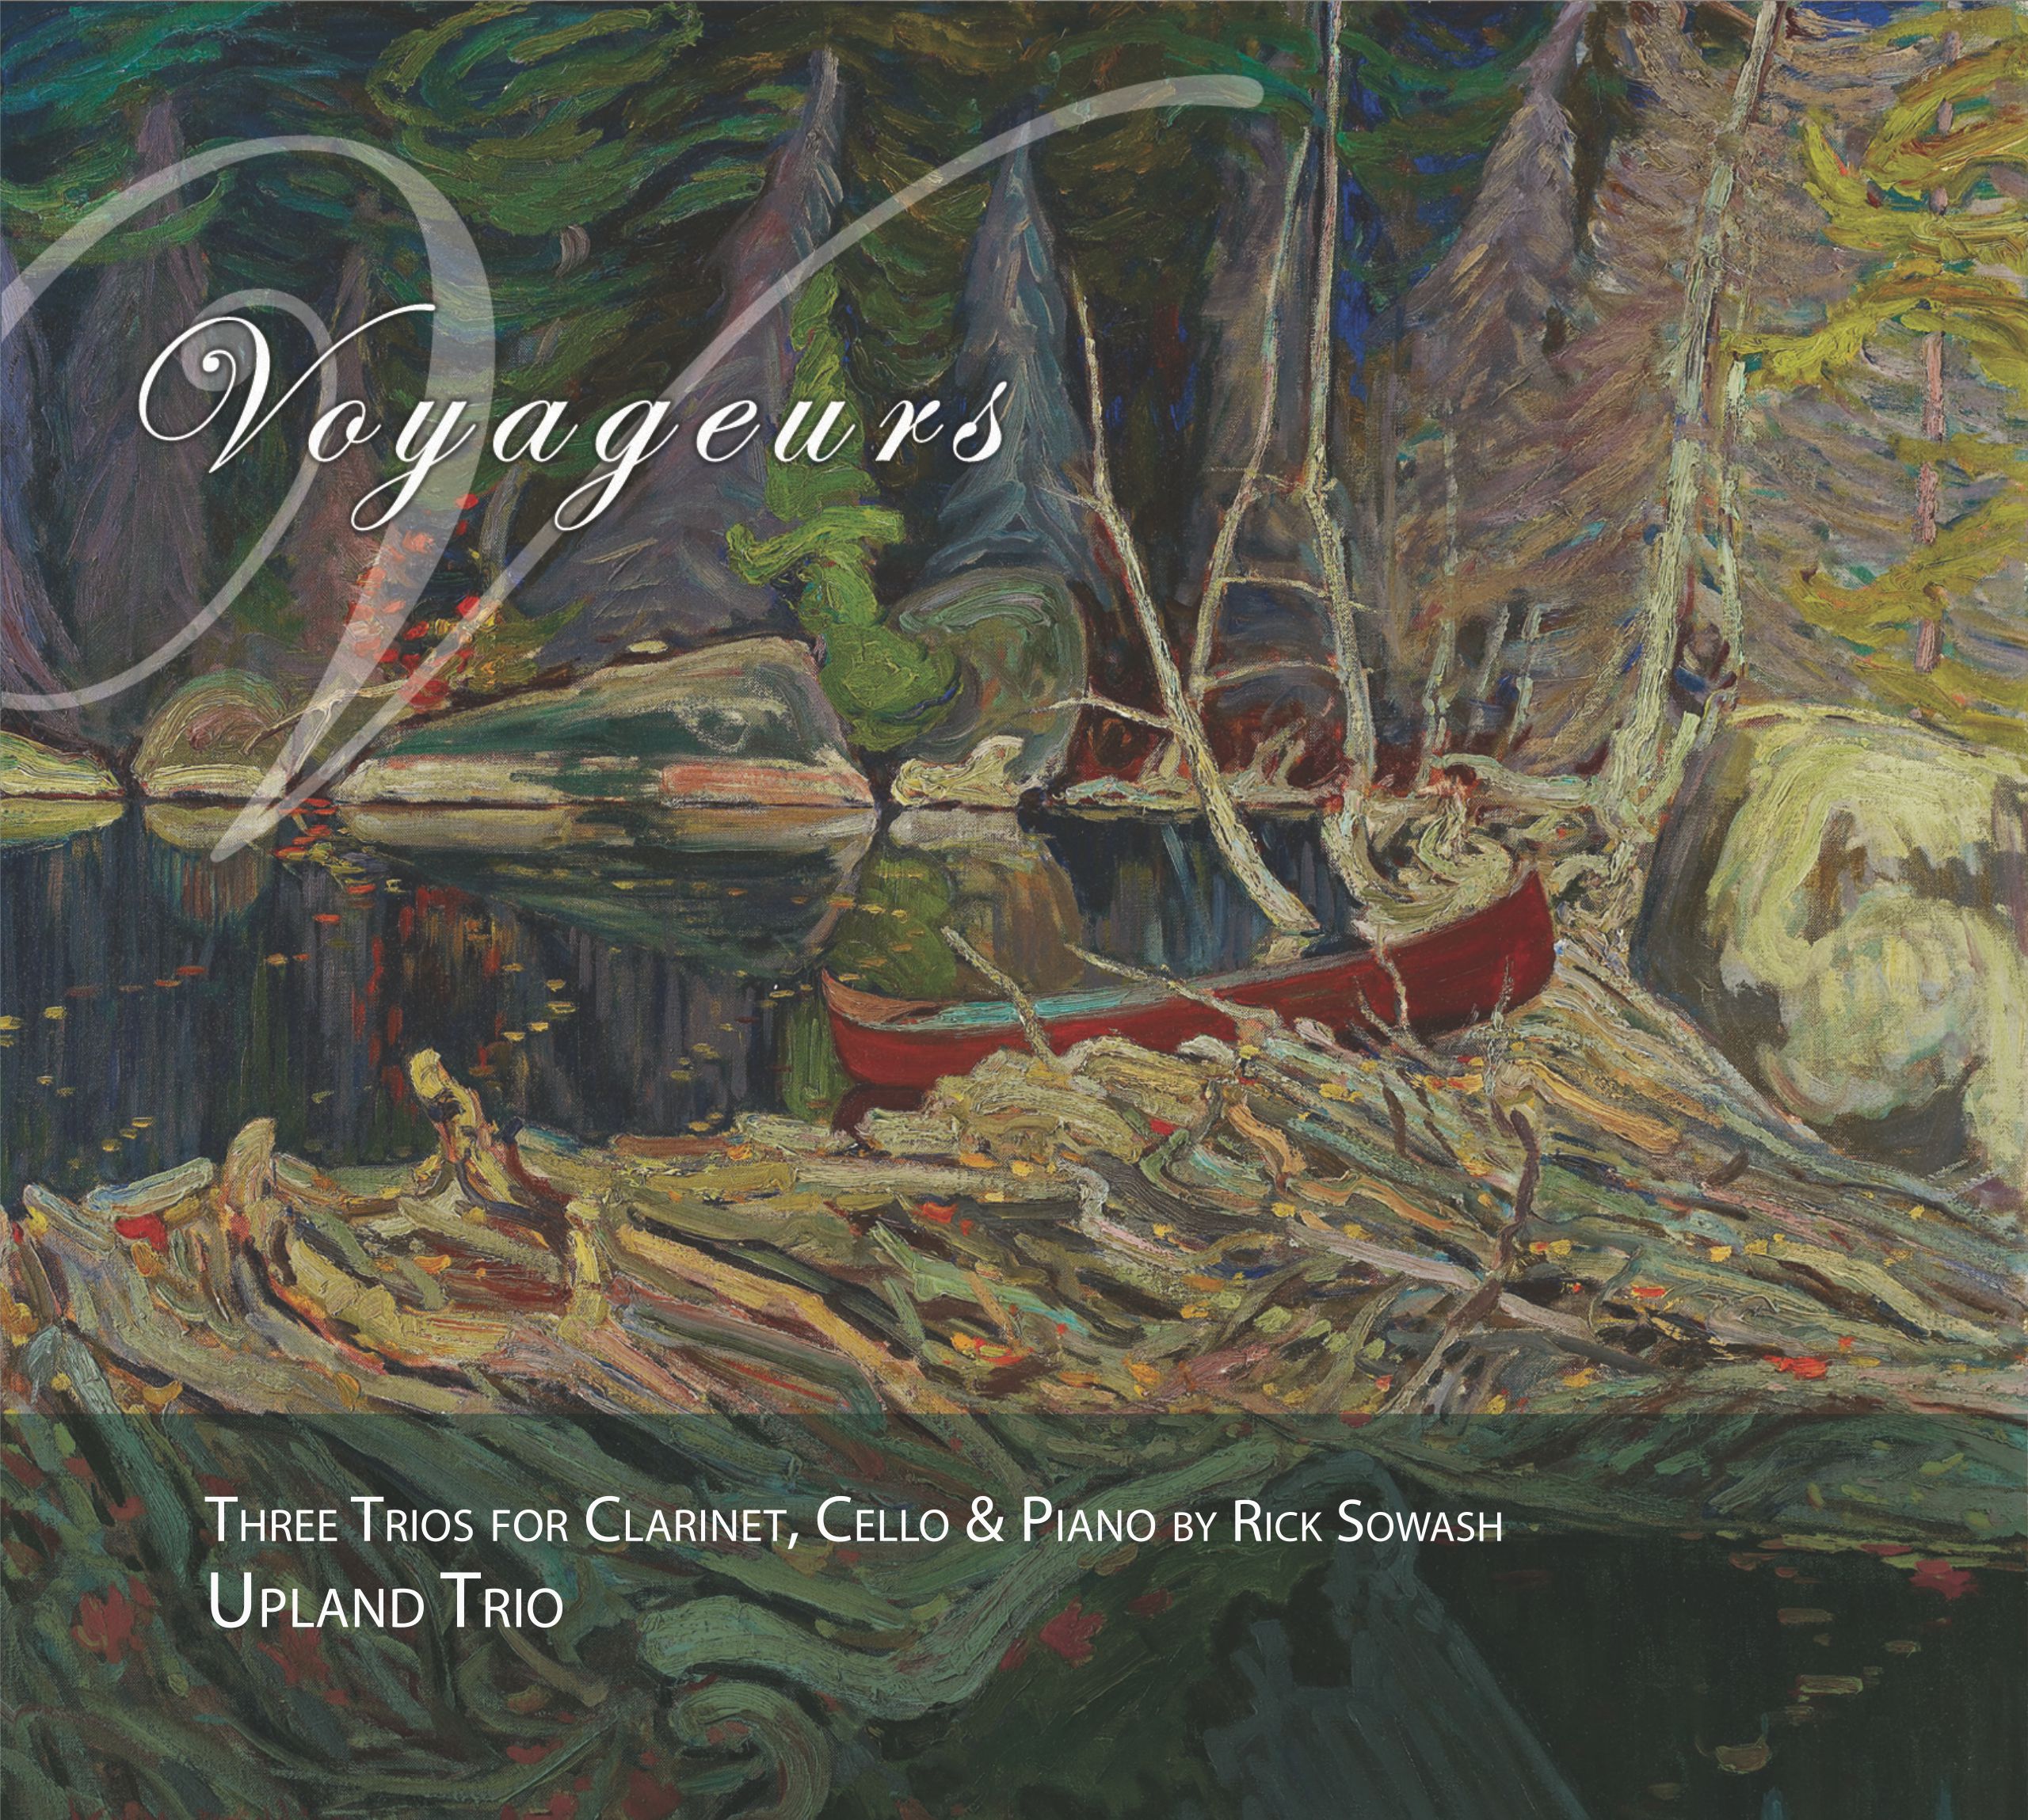 'Voyageurs' album cover